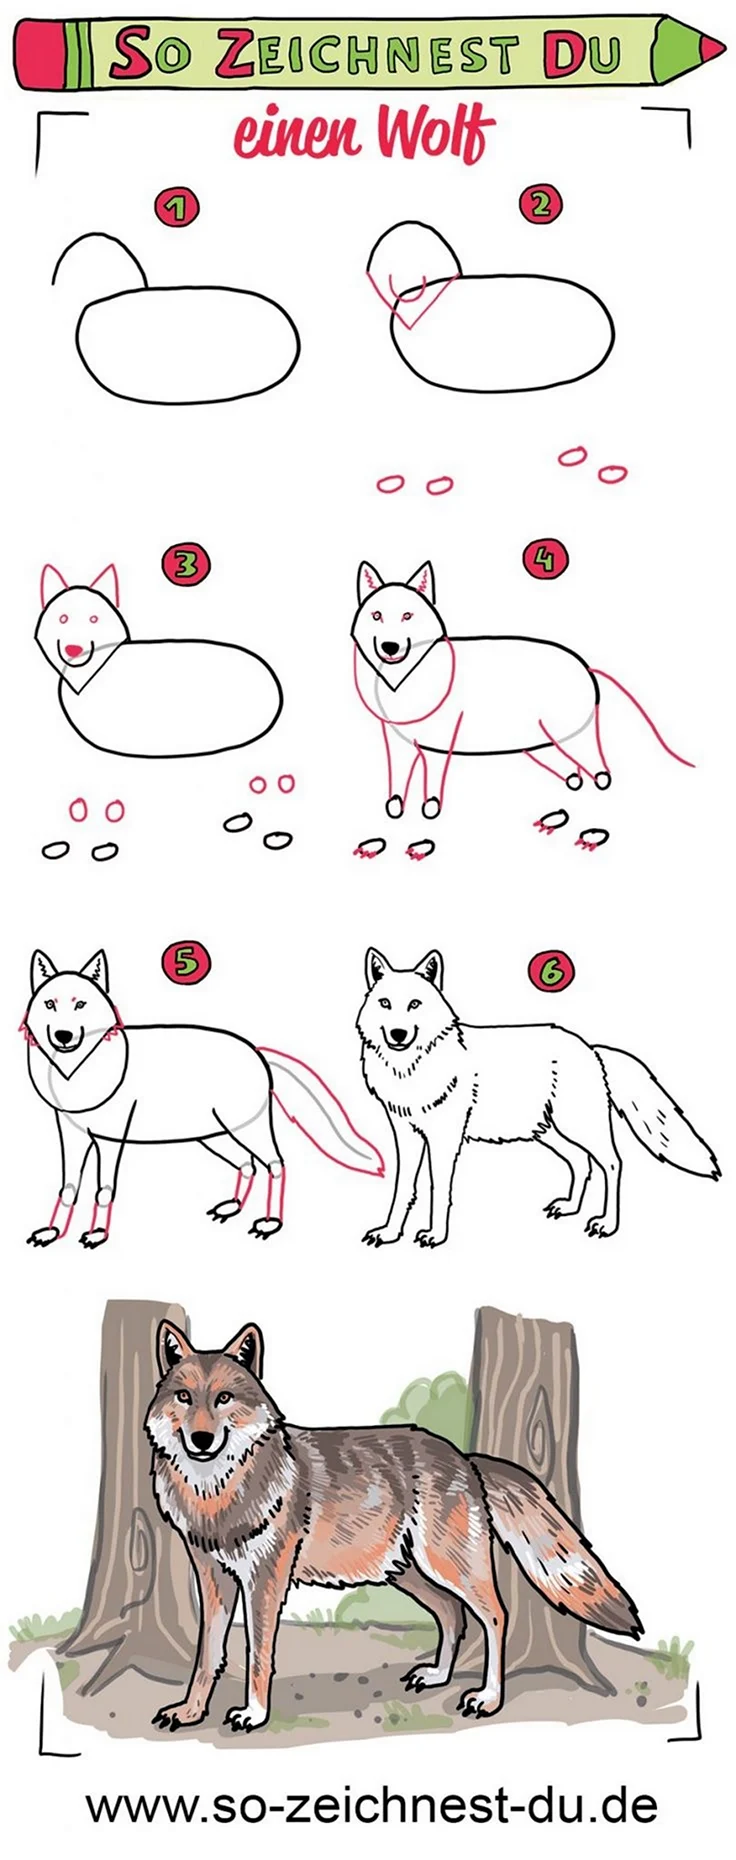 Нарисовать волка схема